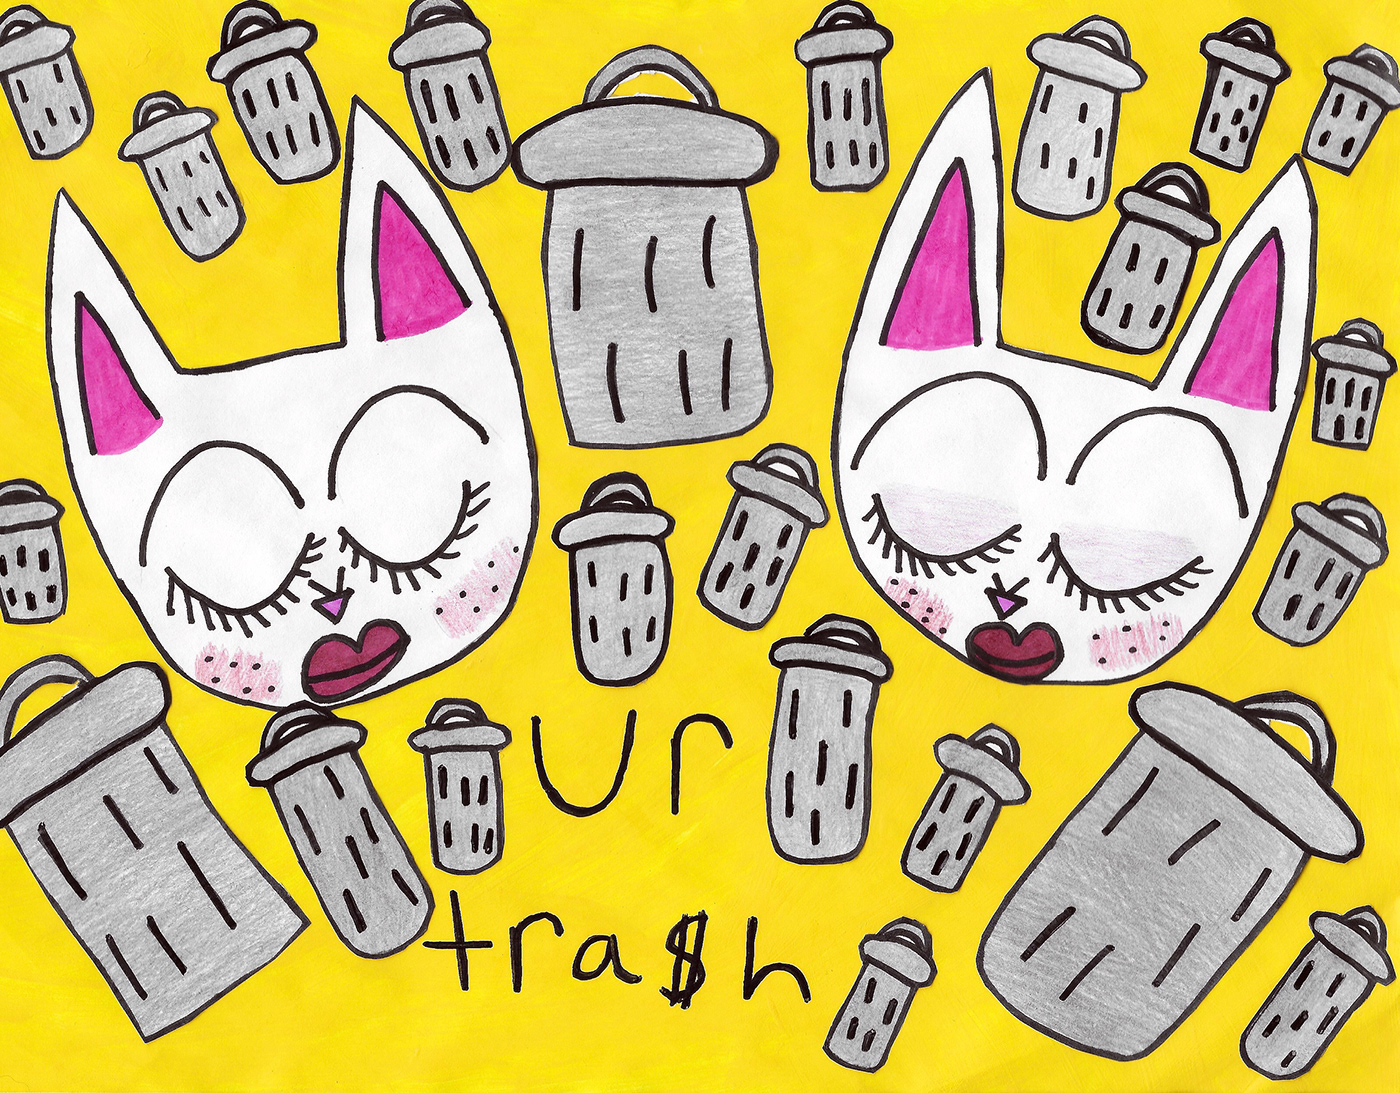 cats kitten animal cute kawaii trash dumpster punk grunge mixedmedia illustrations Illustrator Cat trashcan